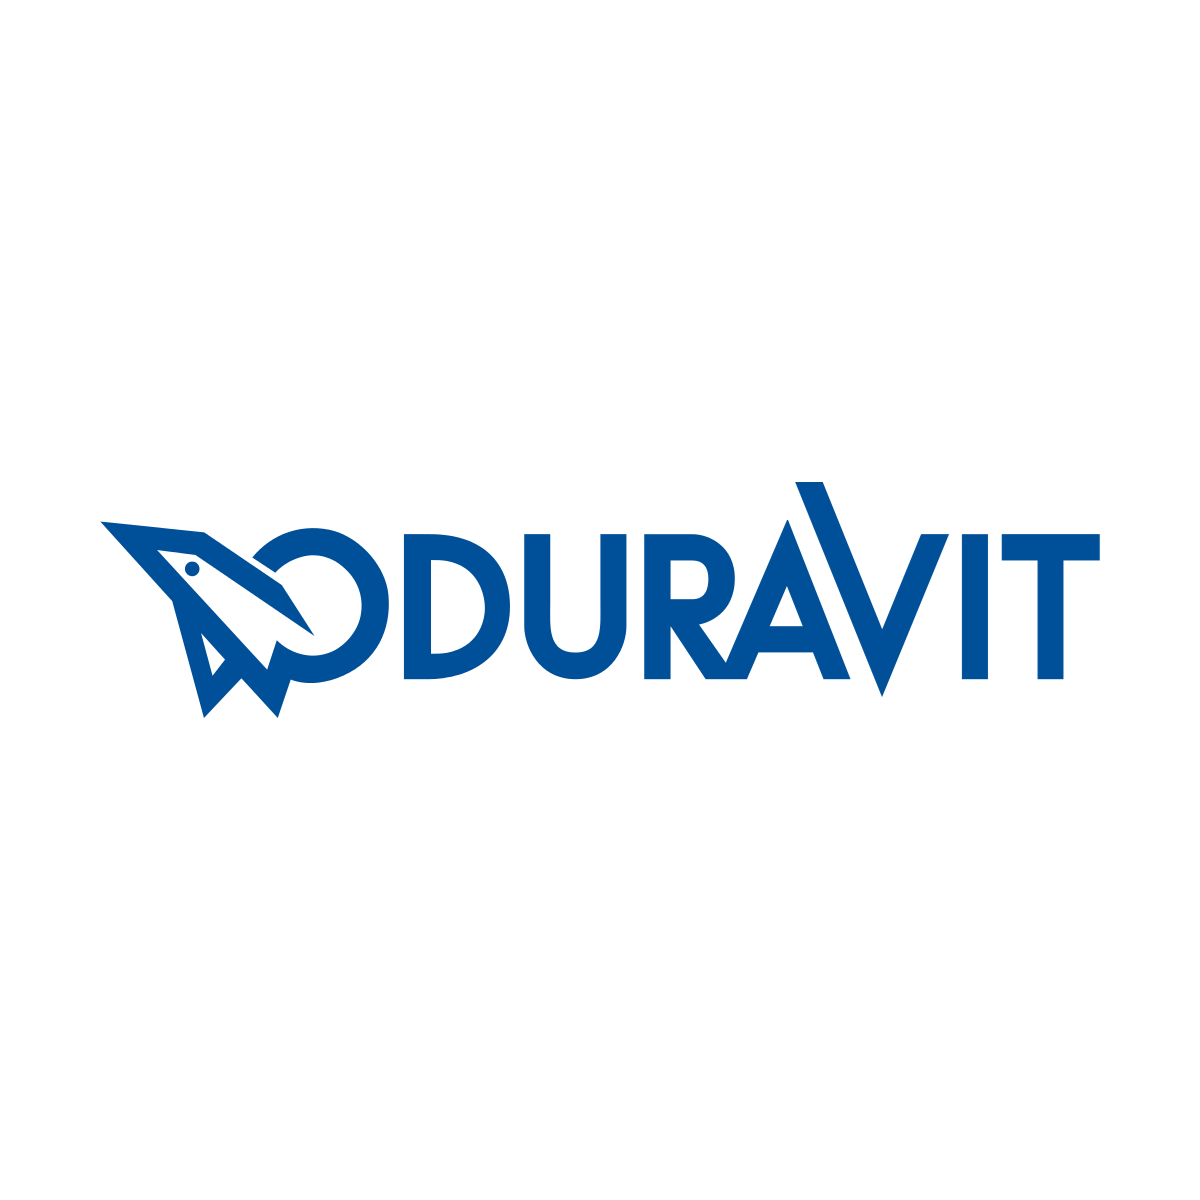 Duravit